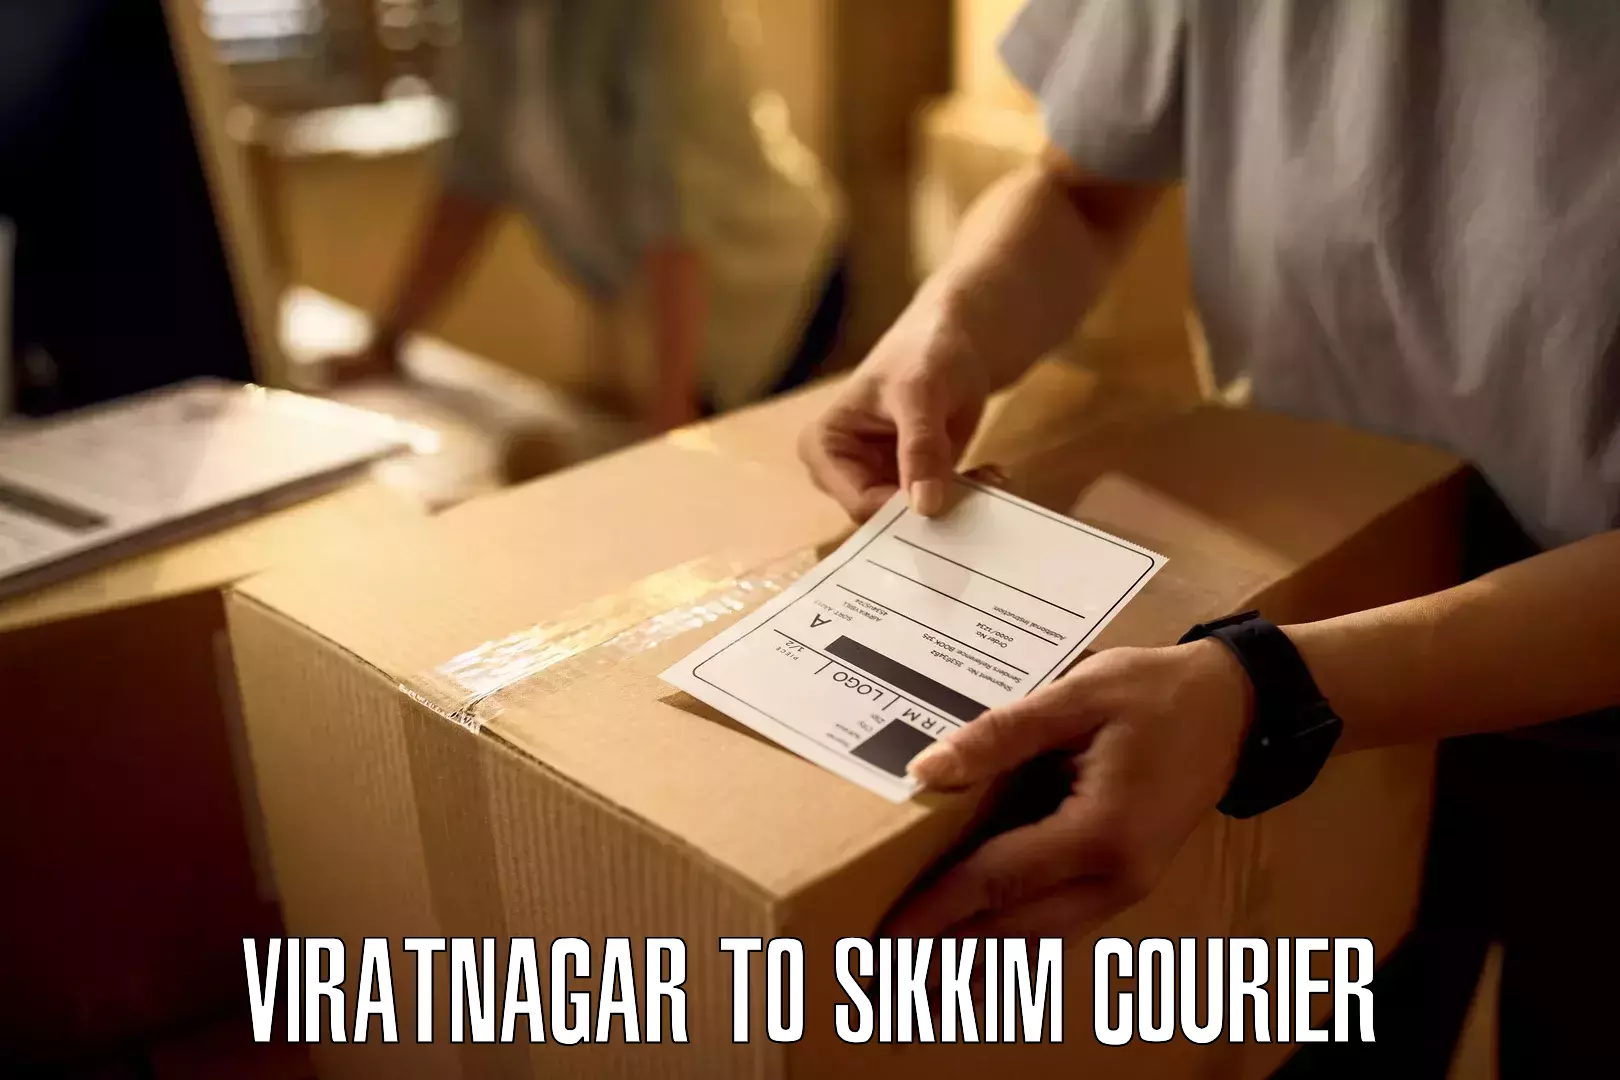 Express package handling Viratnagar to Mangan